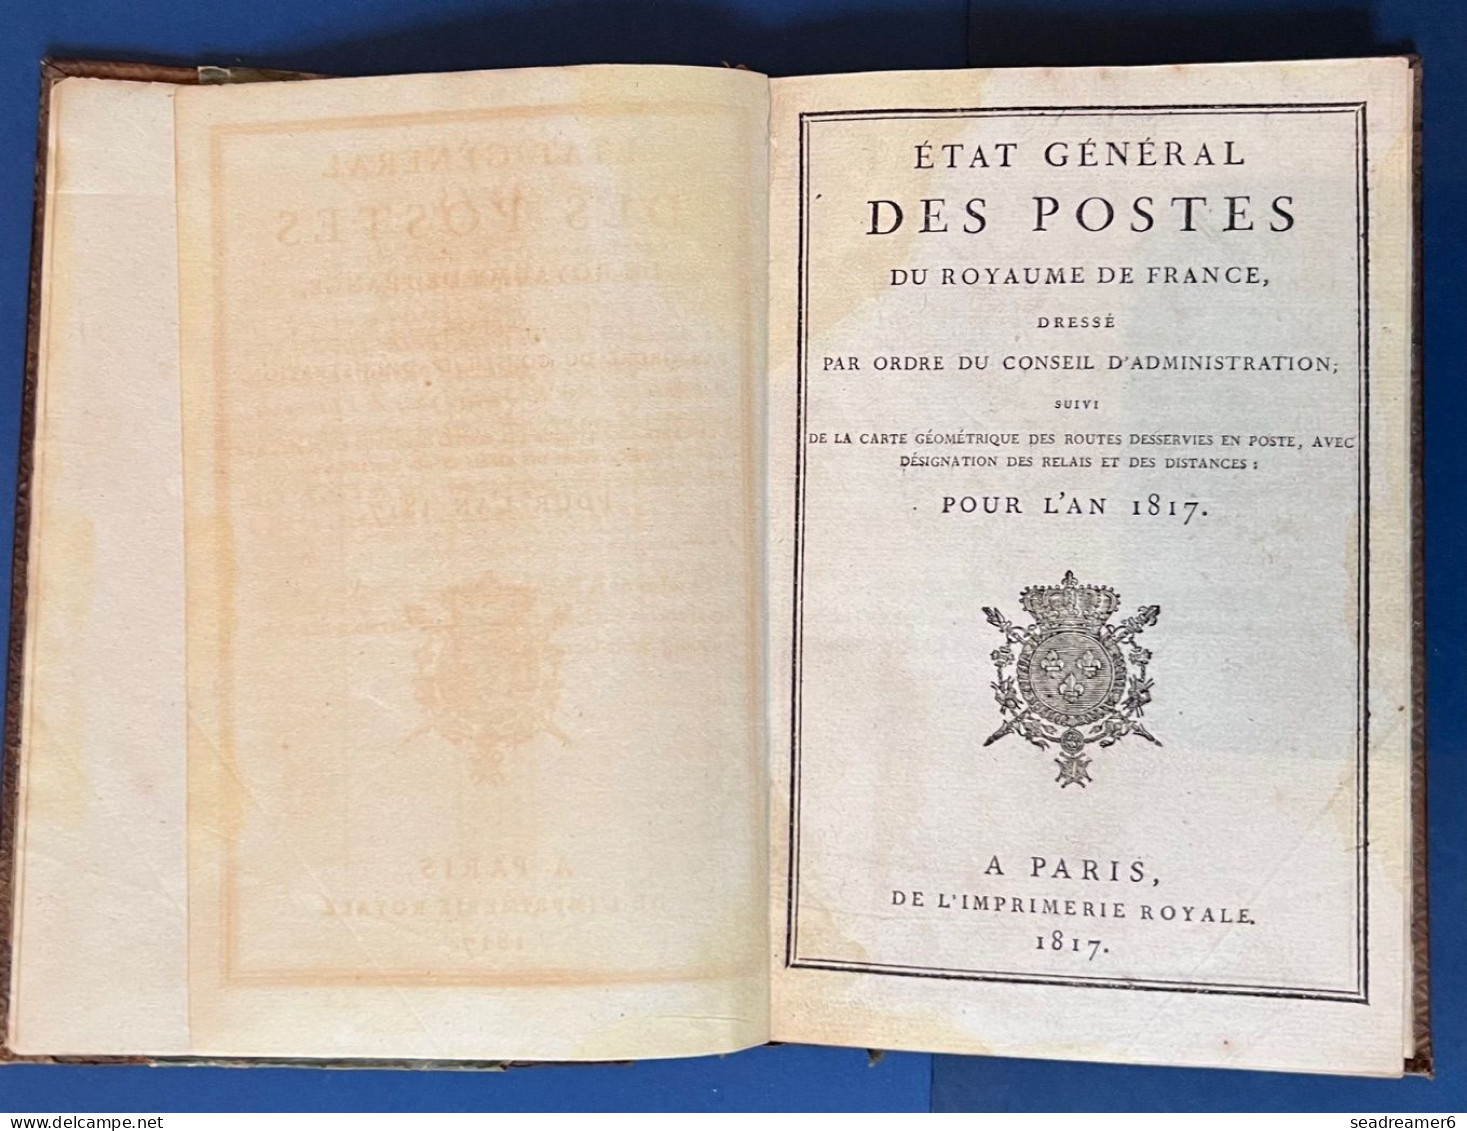 LIVRE RARE Cuir 1817 " ETAT GENERAL DES POSTES DU ROYAUME DE FRANCE " EX COLLECTION BAUDOT - Philately And Postal History